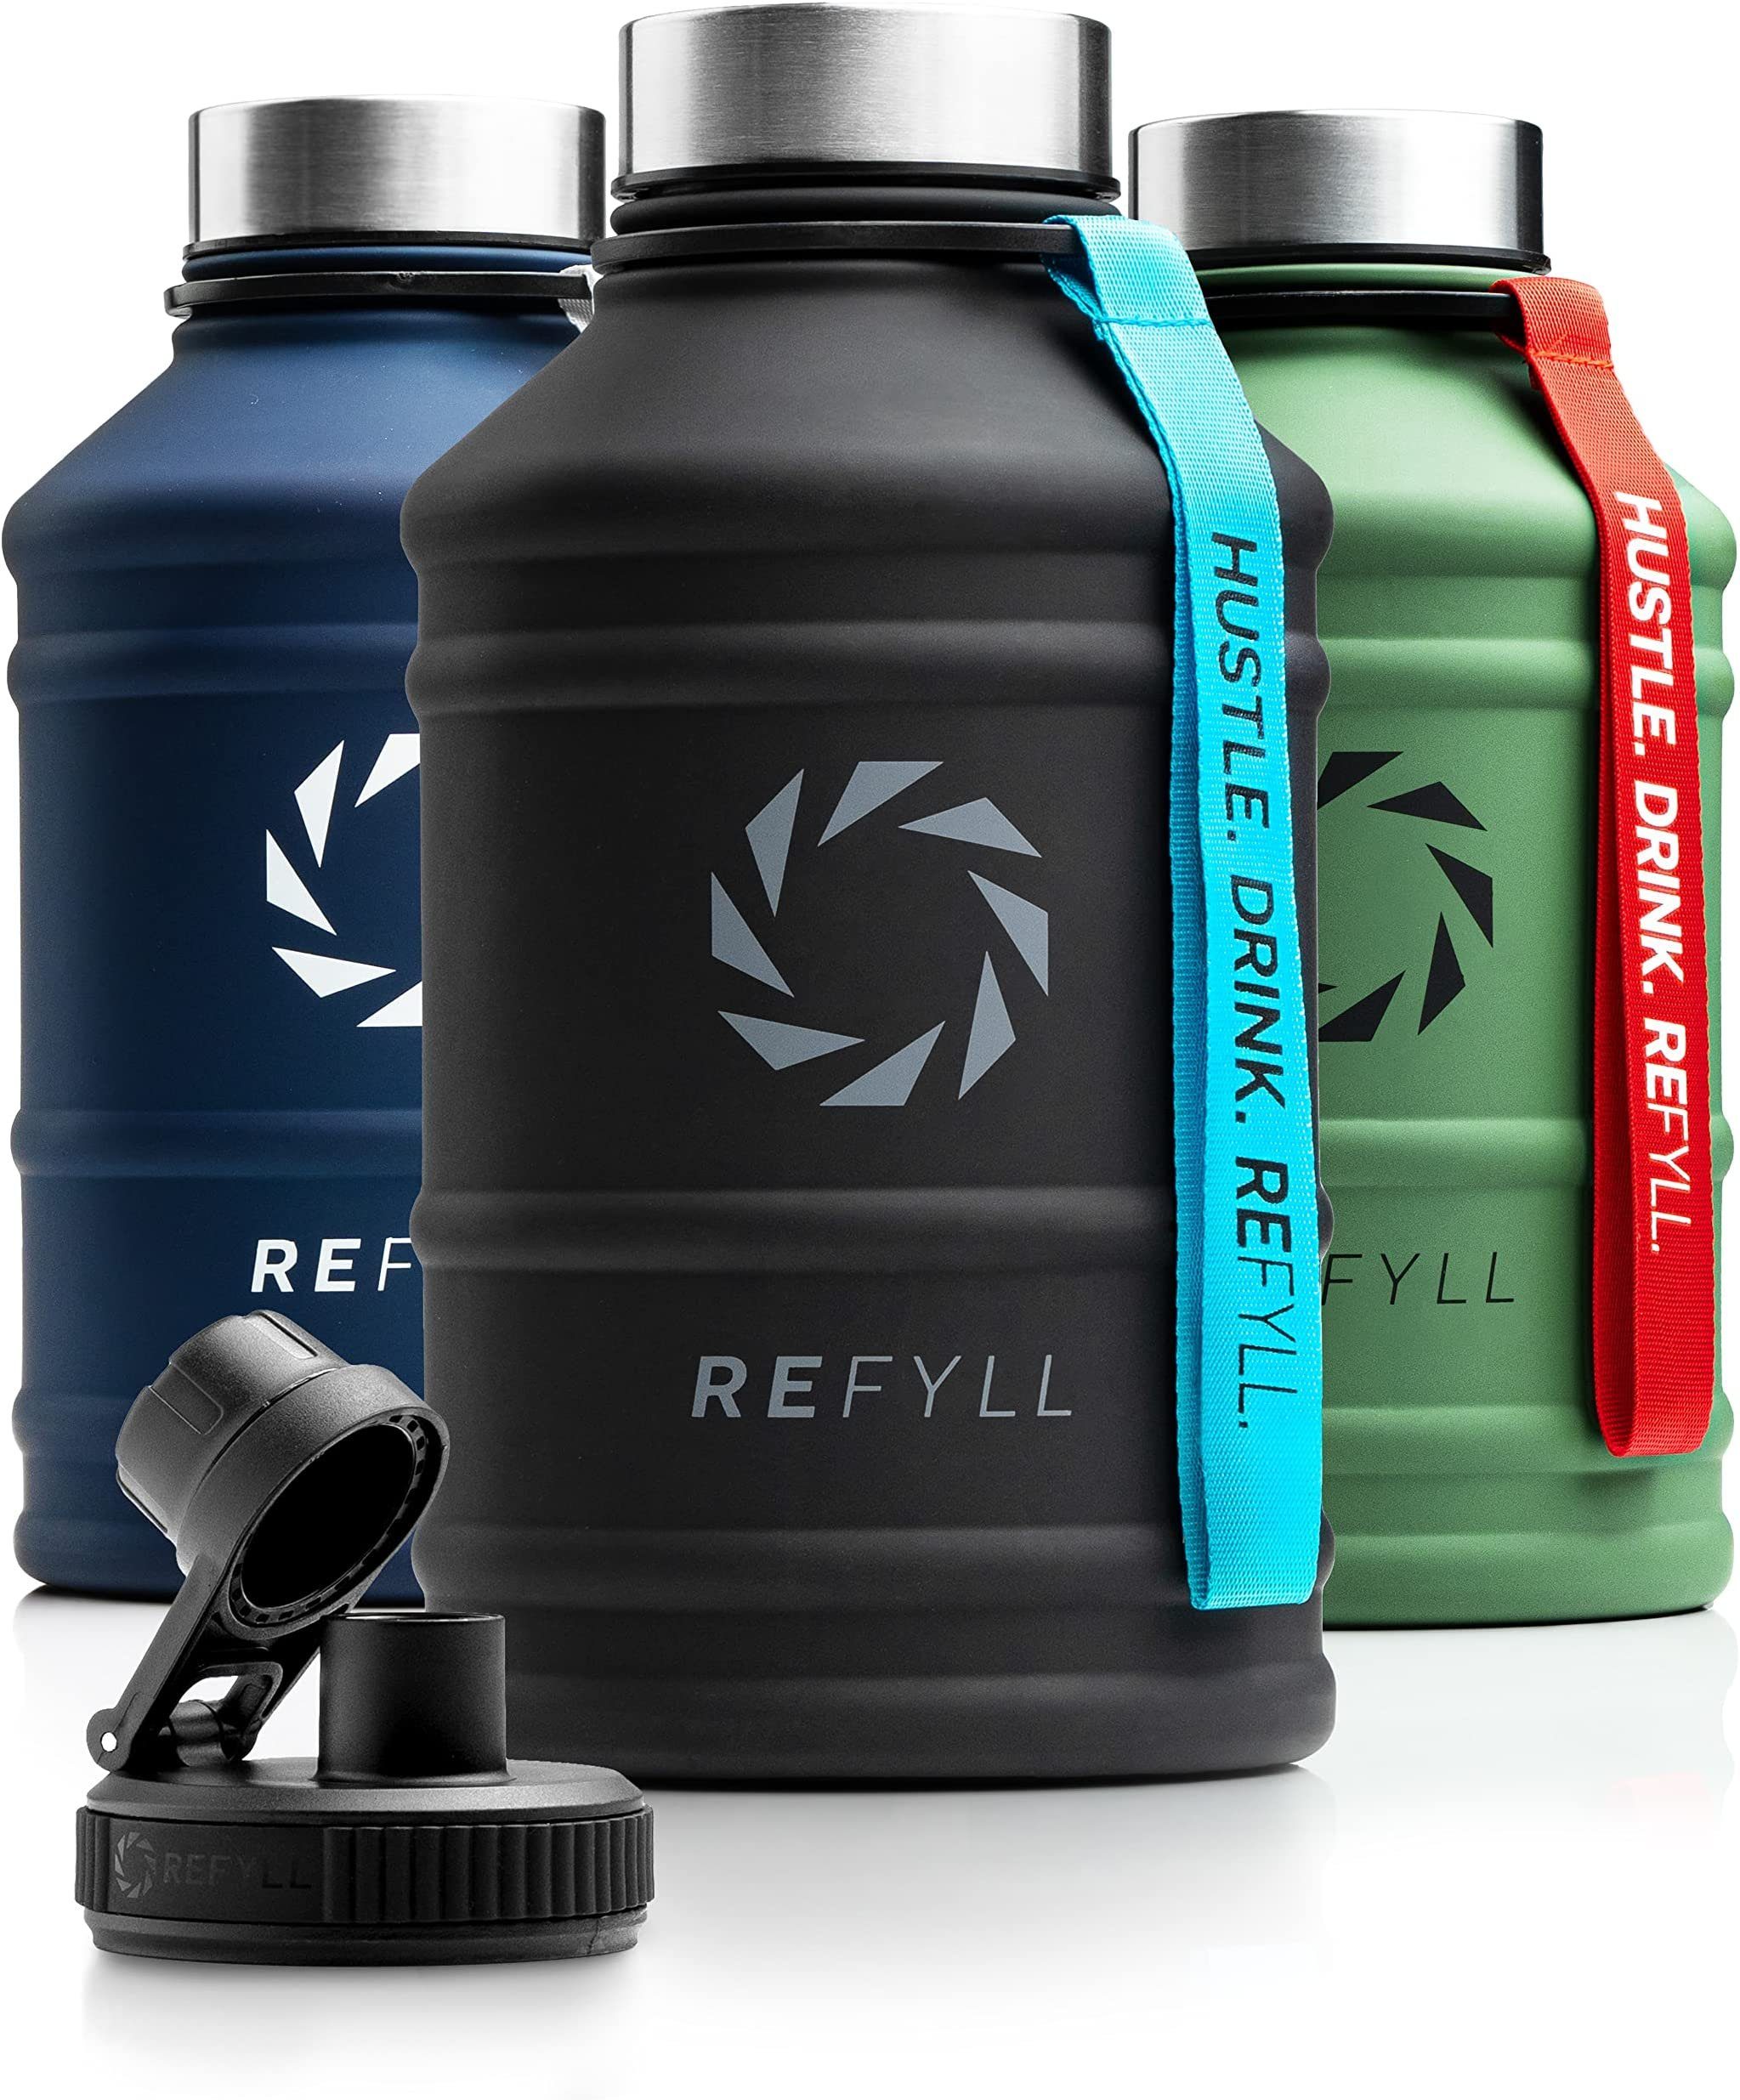 und robust, Edelstahl L Fitness für Trinkflasche REFYLL Trinkflasche Water auslaufsicher Hero Trinkflasche Jug 2,2 Black Midnight Auslaufsicher, 2,2L, 1,3L Gym, Sport,